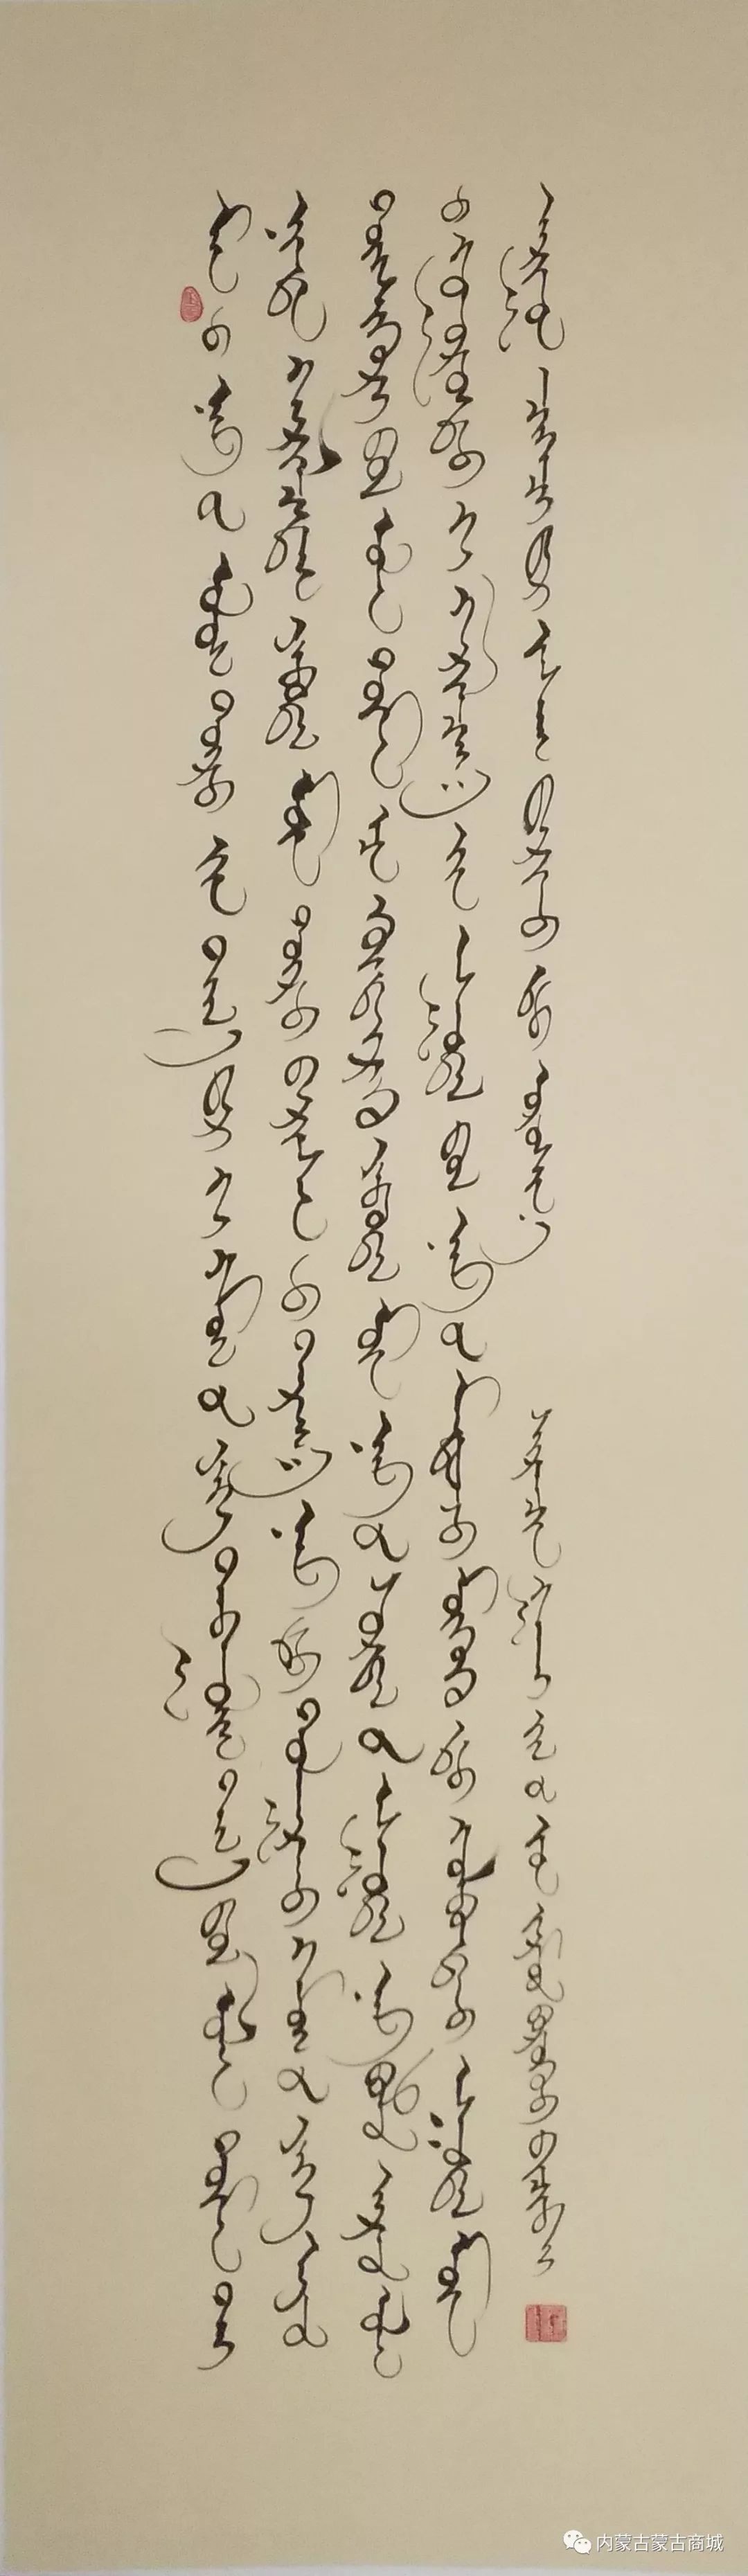 【第二期】蒙古文书法作品 第12张